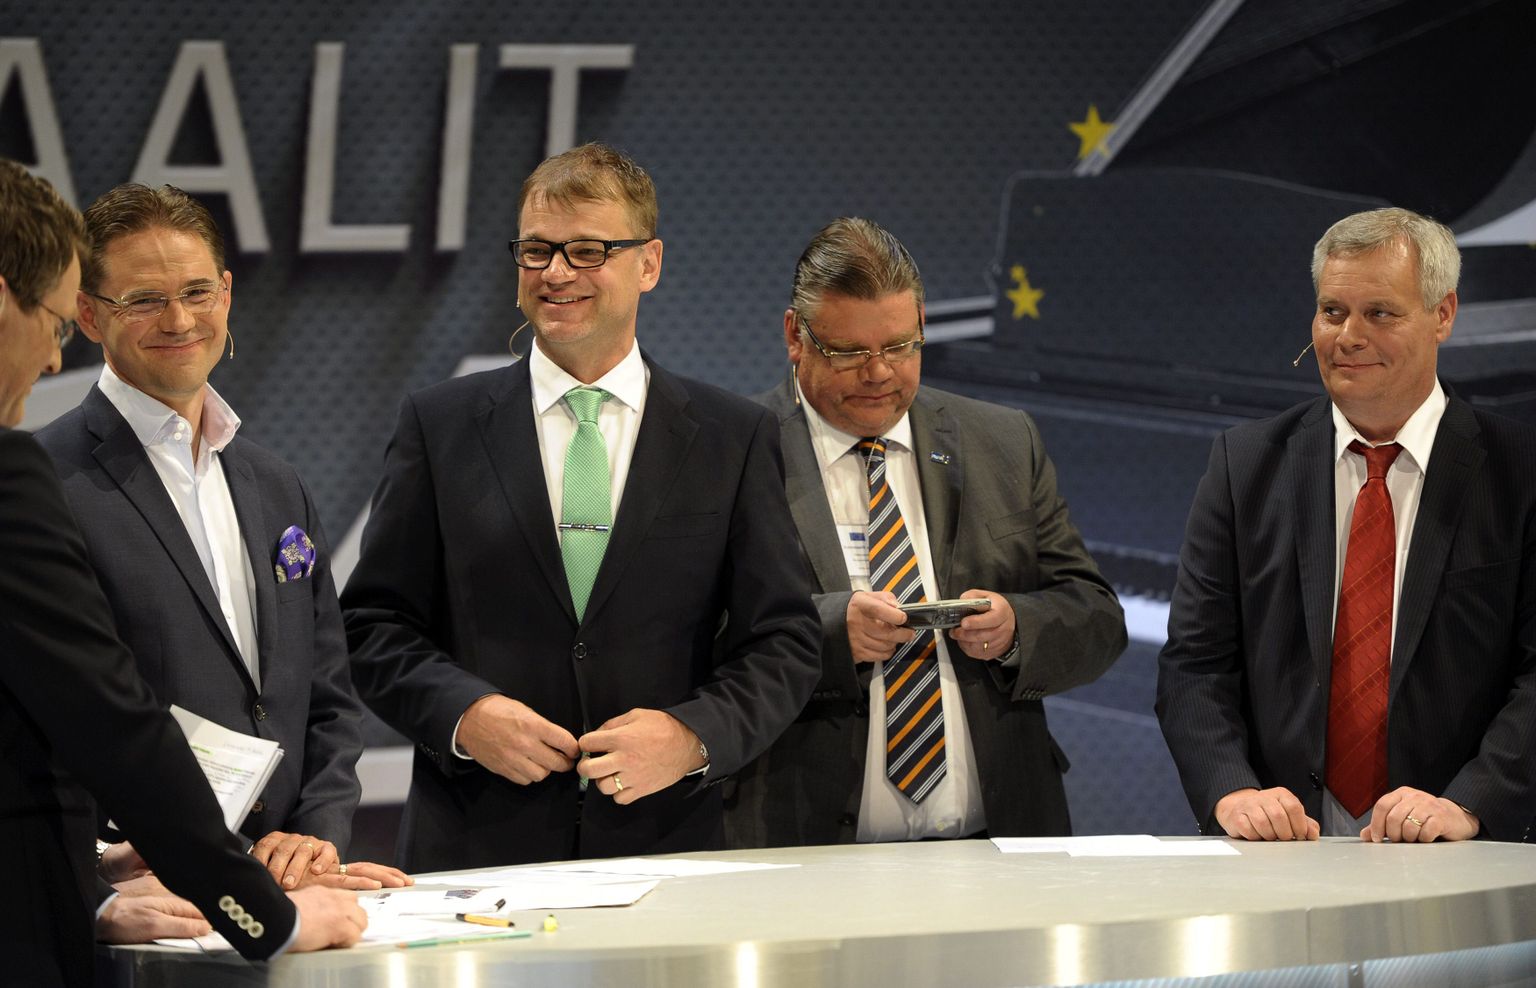 Soome uus rahandusminister on Antti Rinne (pildil kõige parempoolsem)